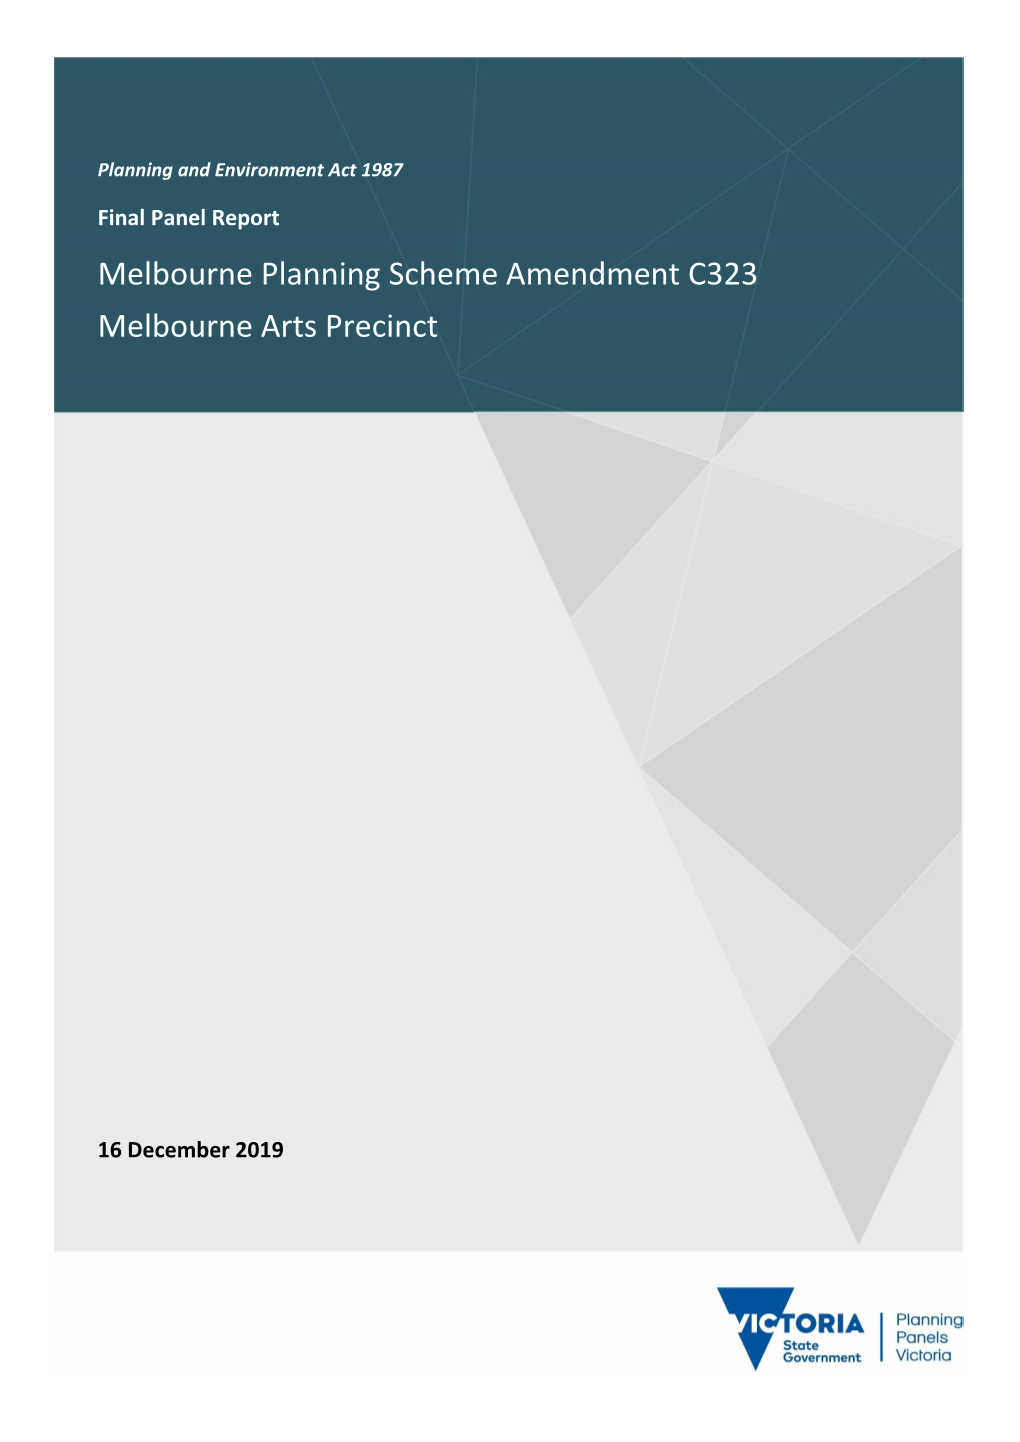 Melbourne Planning Scheme Amendment C323 Melbourne Arts Precinct